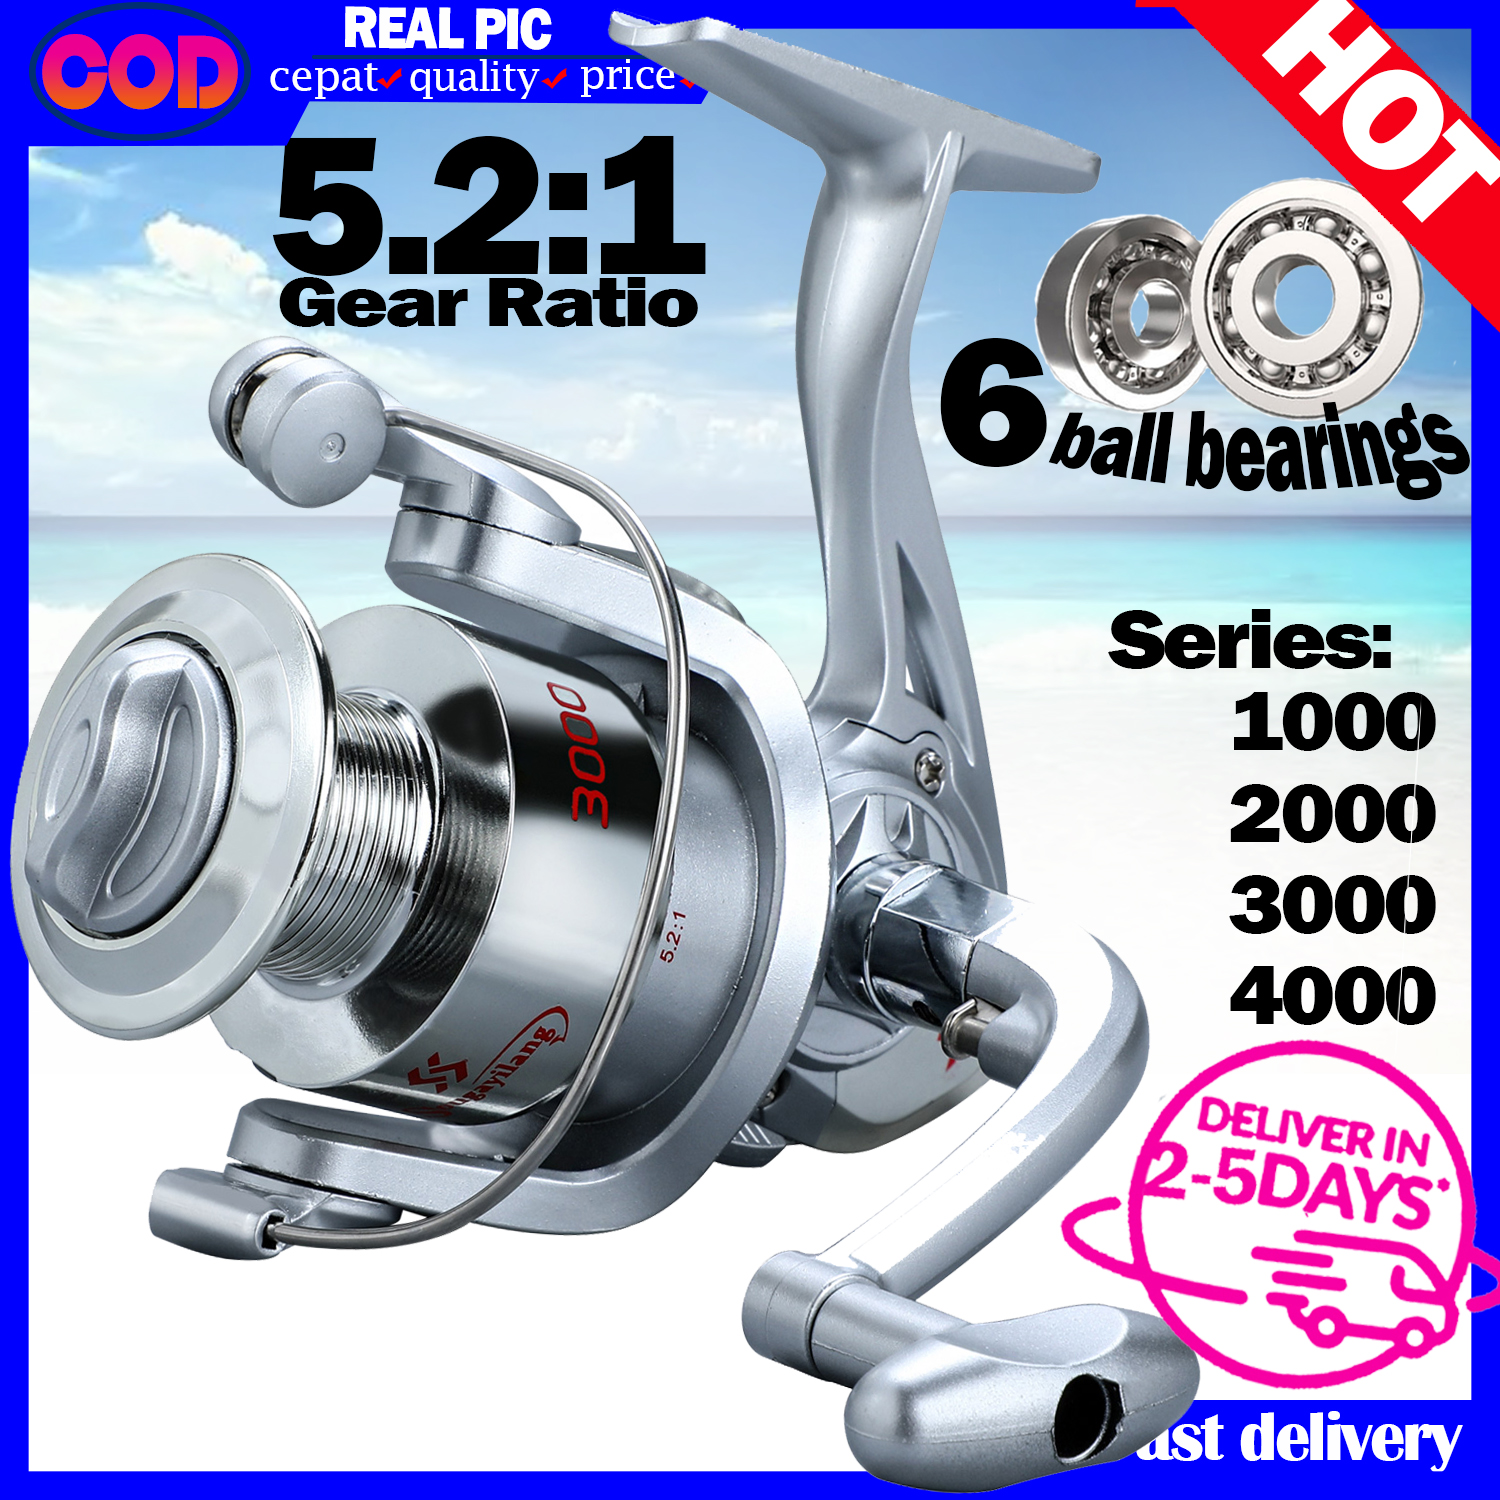 Buy 800 Series Reel online